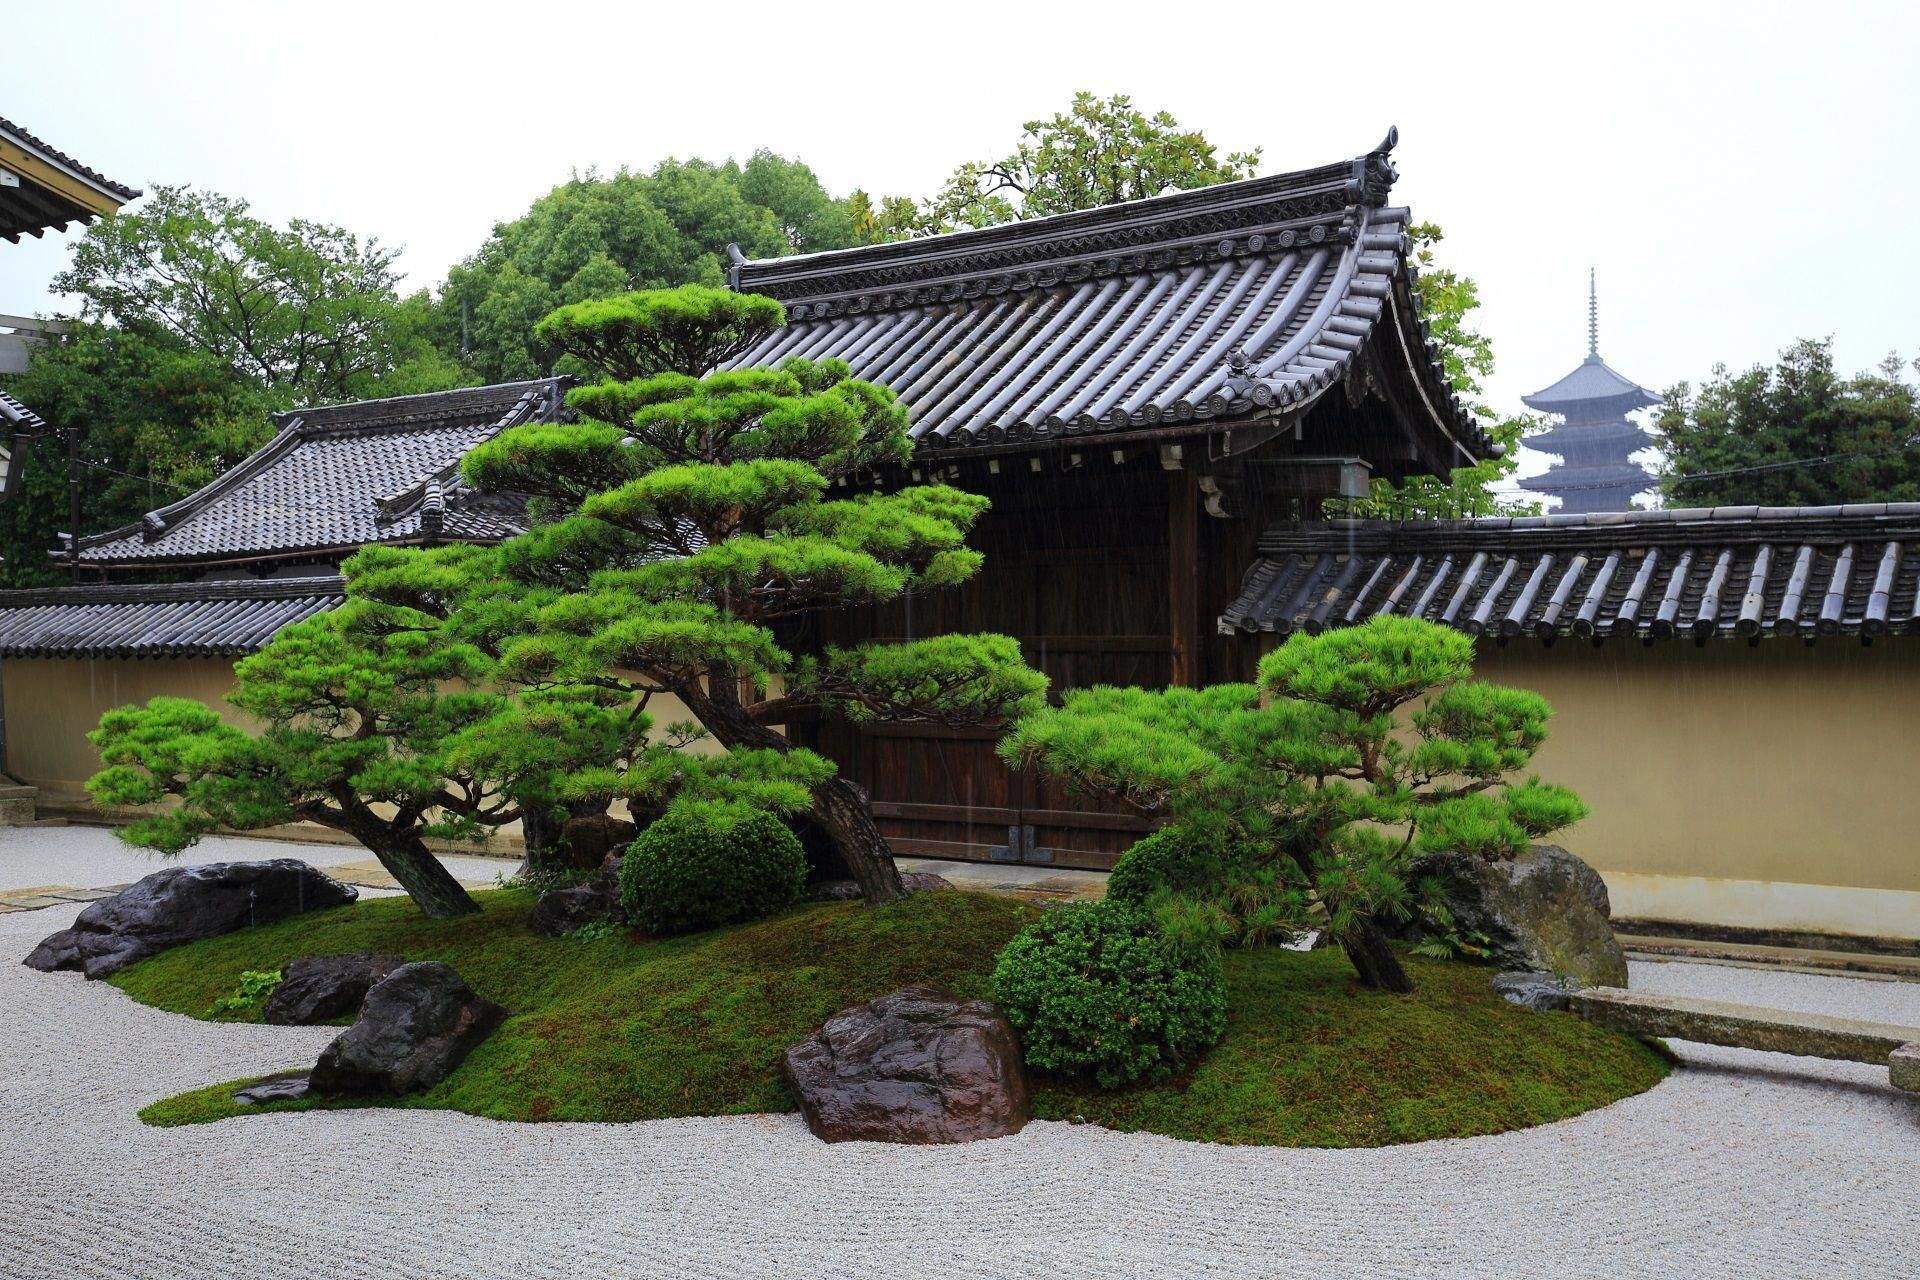 japanischer garten ideen genial zahrada boha starach a pac29btpodlaac2ben pagoda of japanischer garten ideen